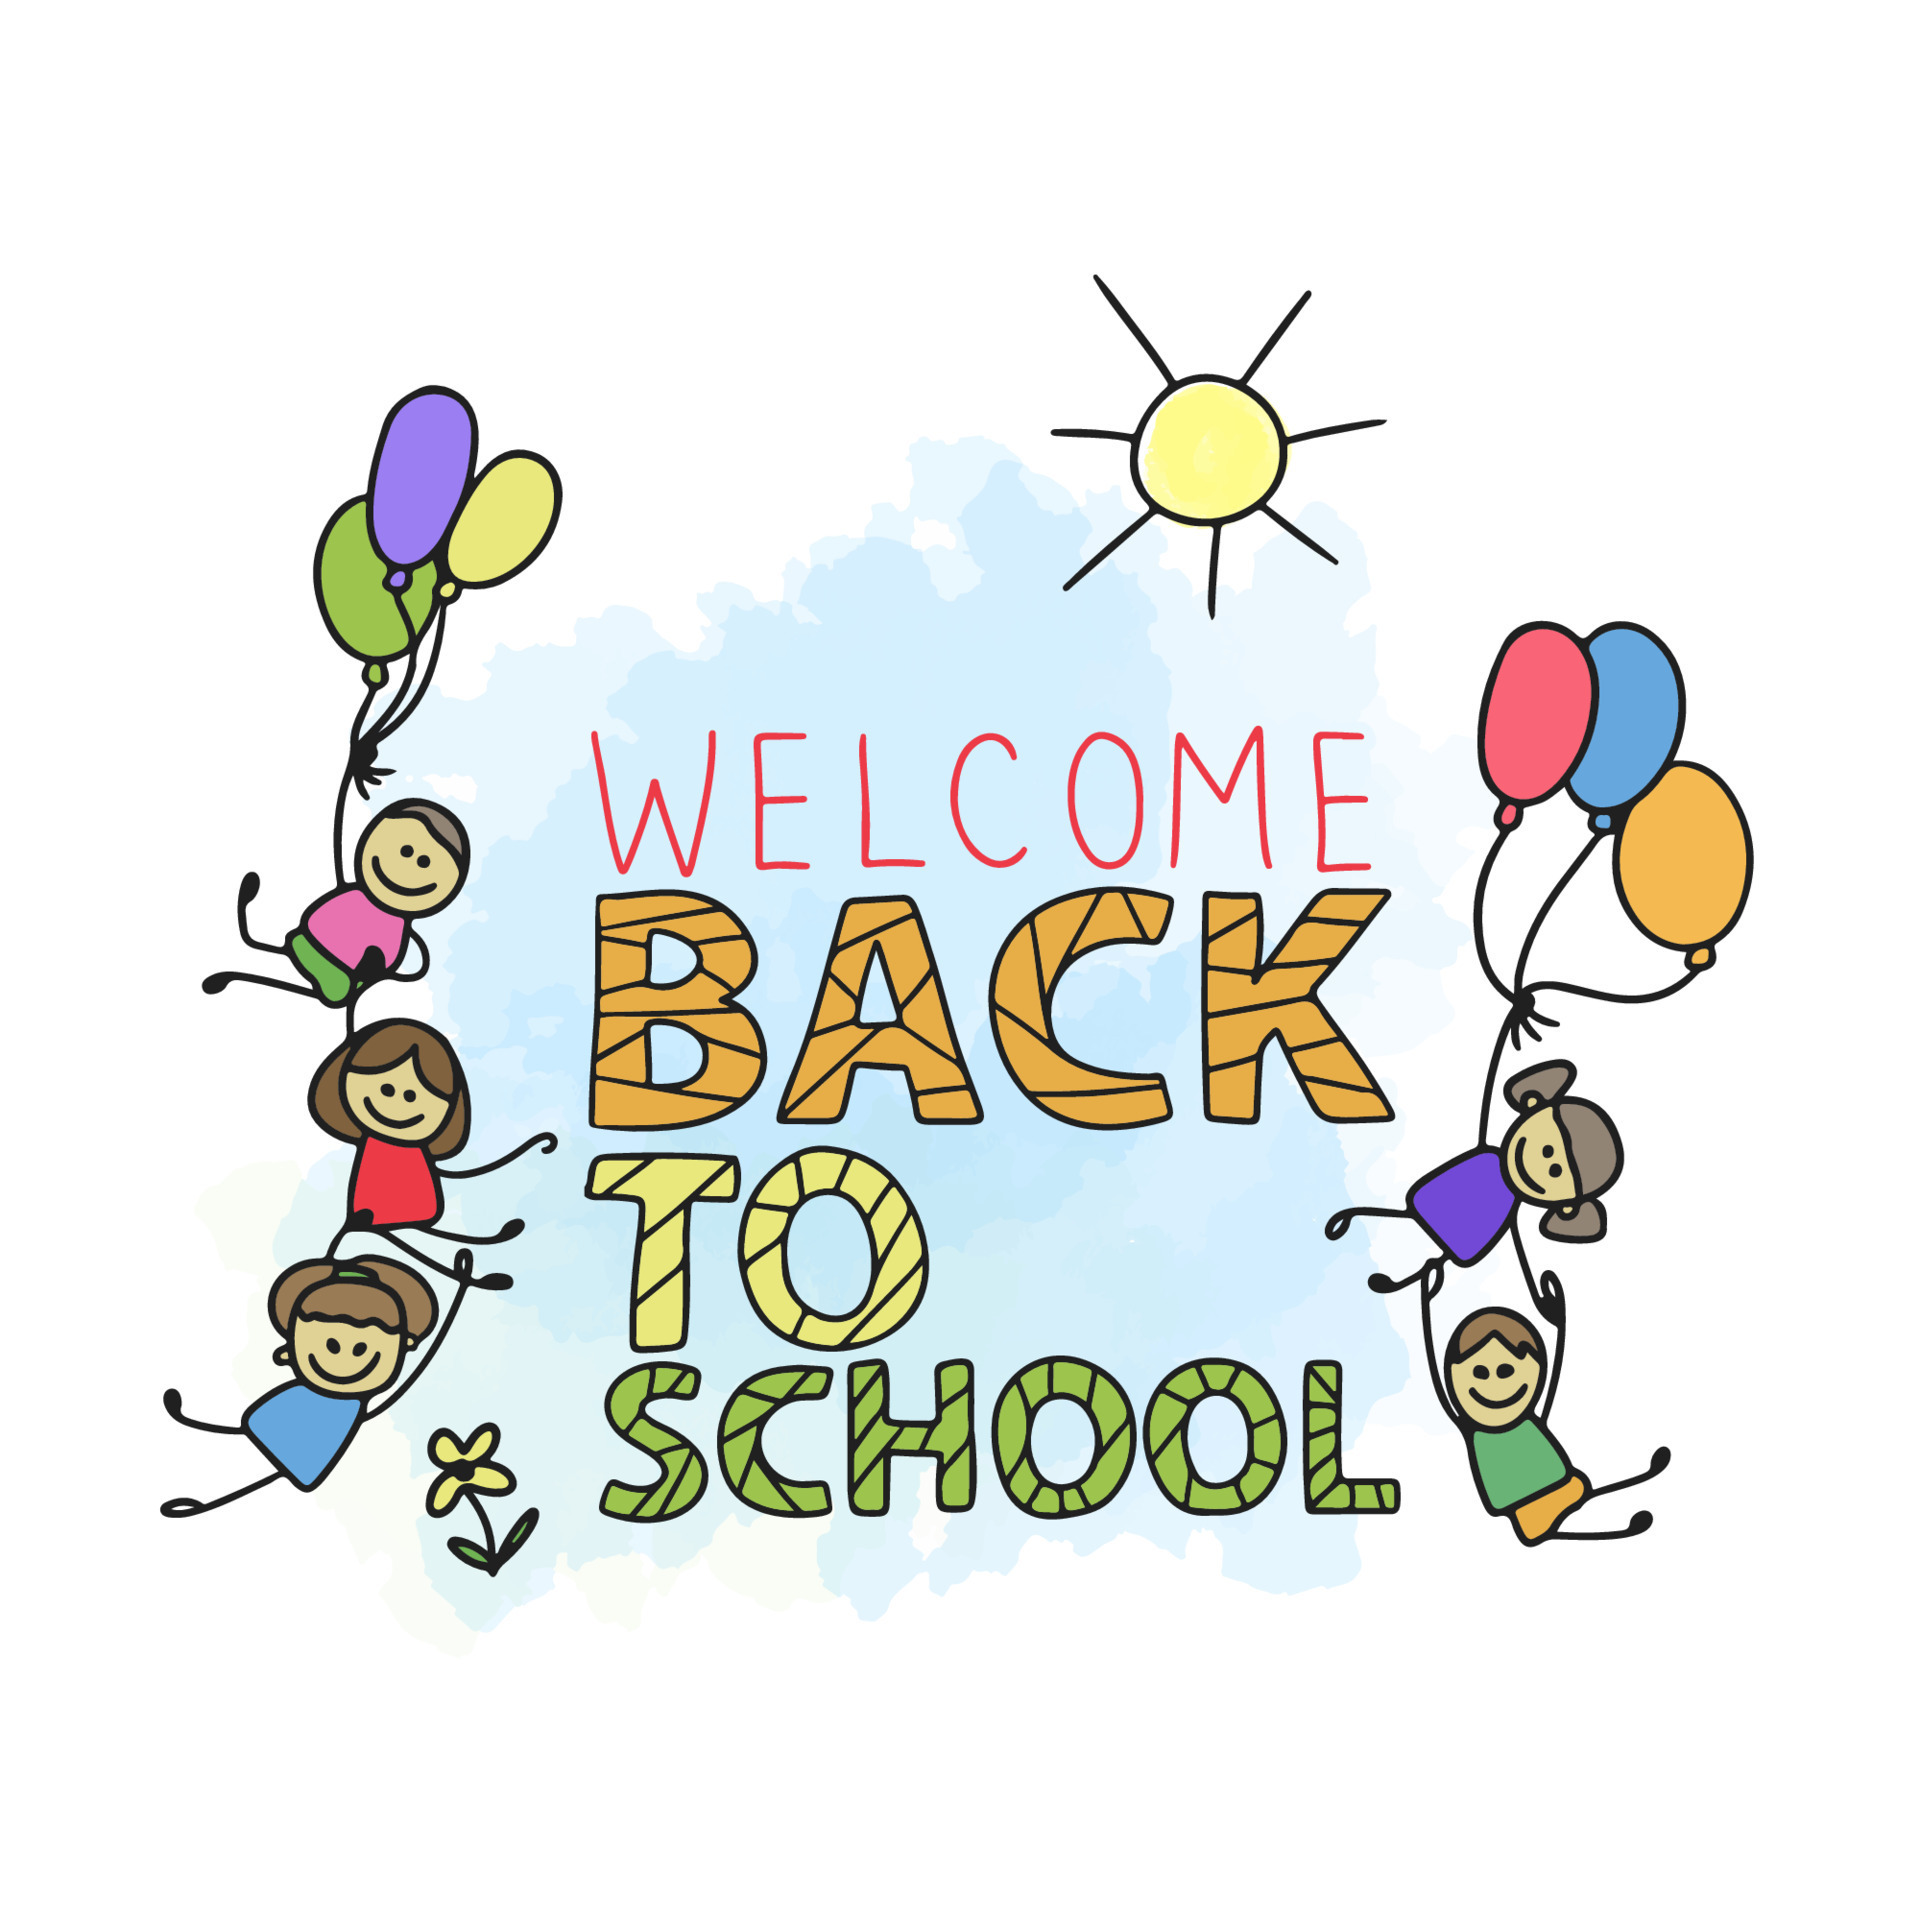 Welcome back to school, handwritten quotes, cute cartoon kids joyful with  balloons 10253686 Vector Art at Vecteezy